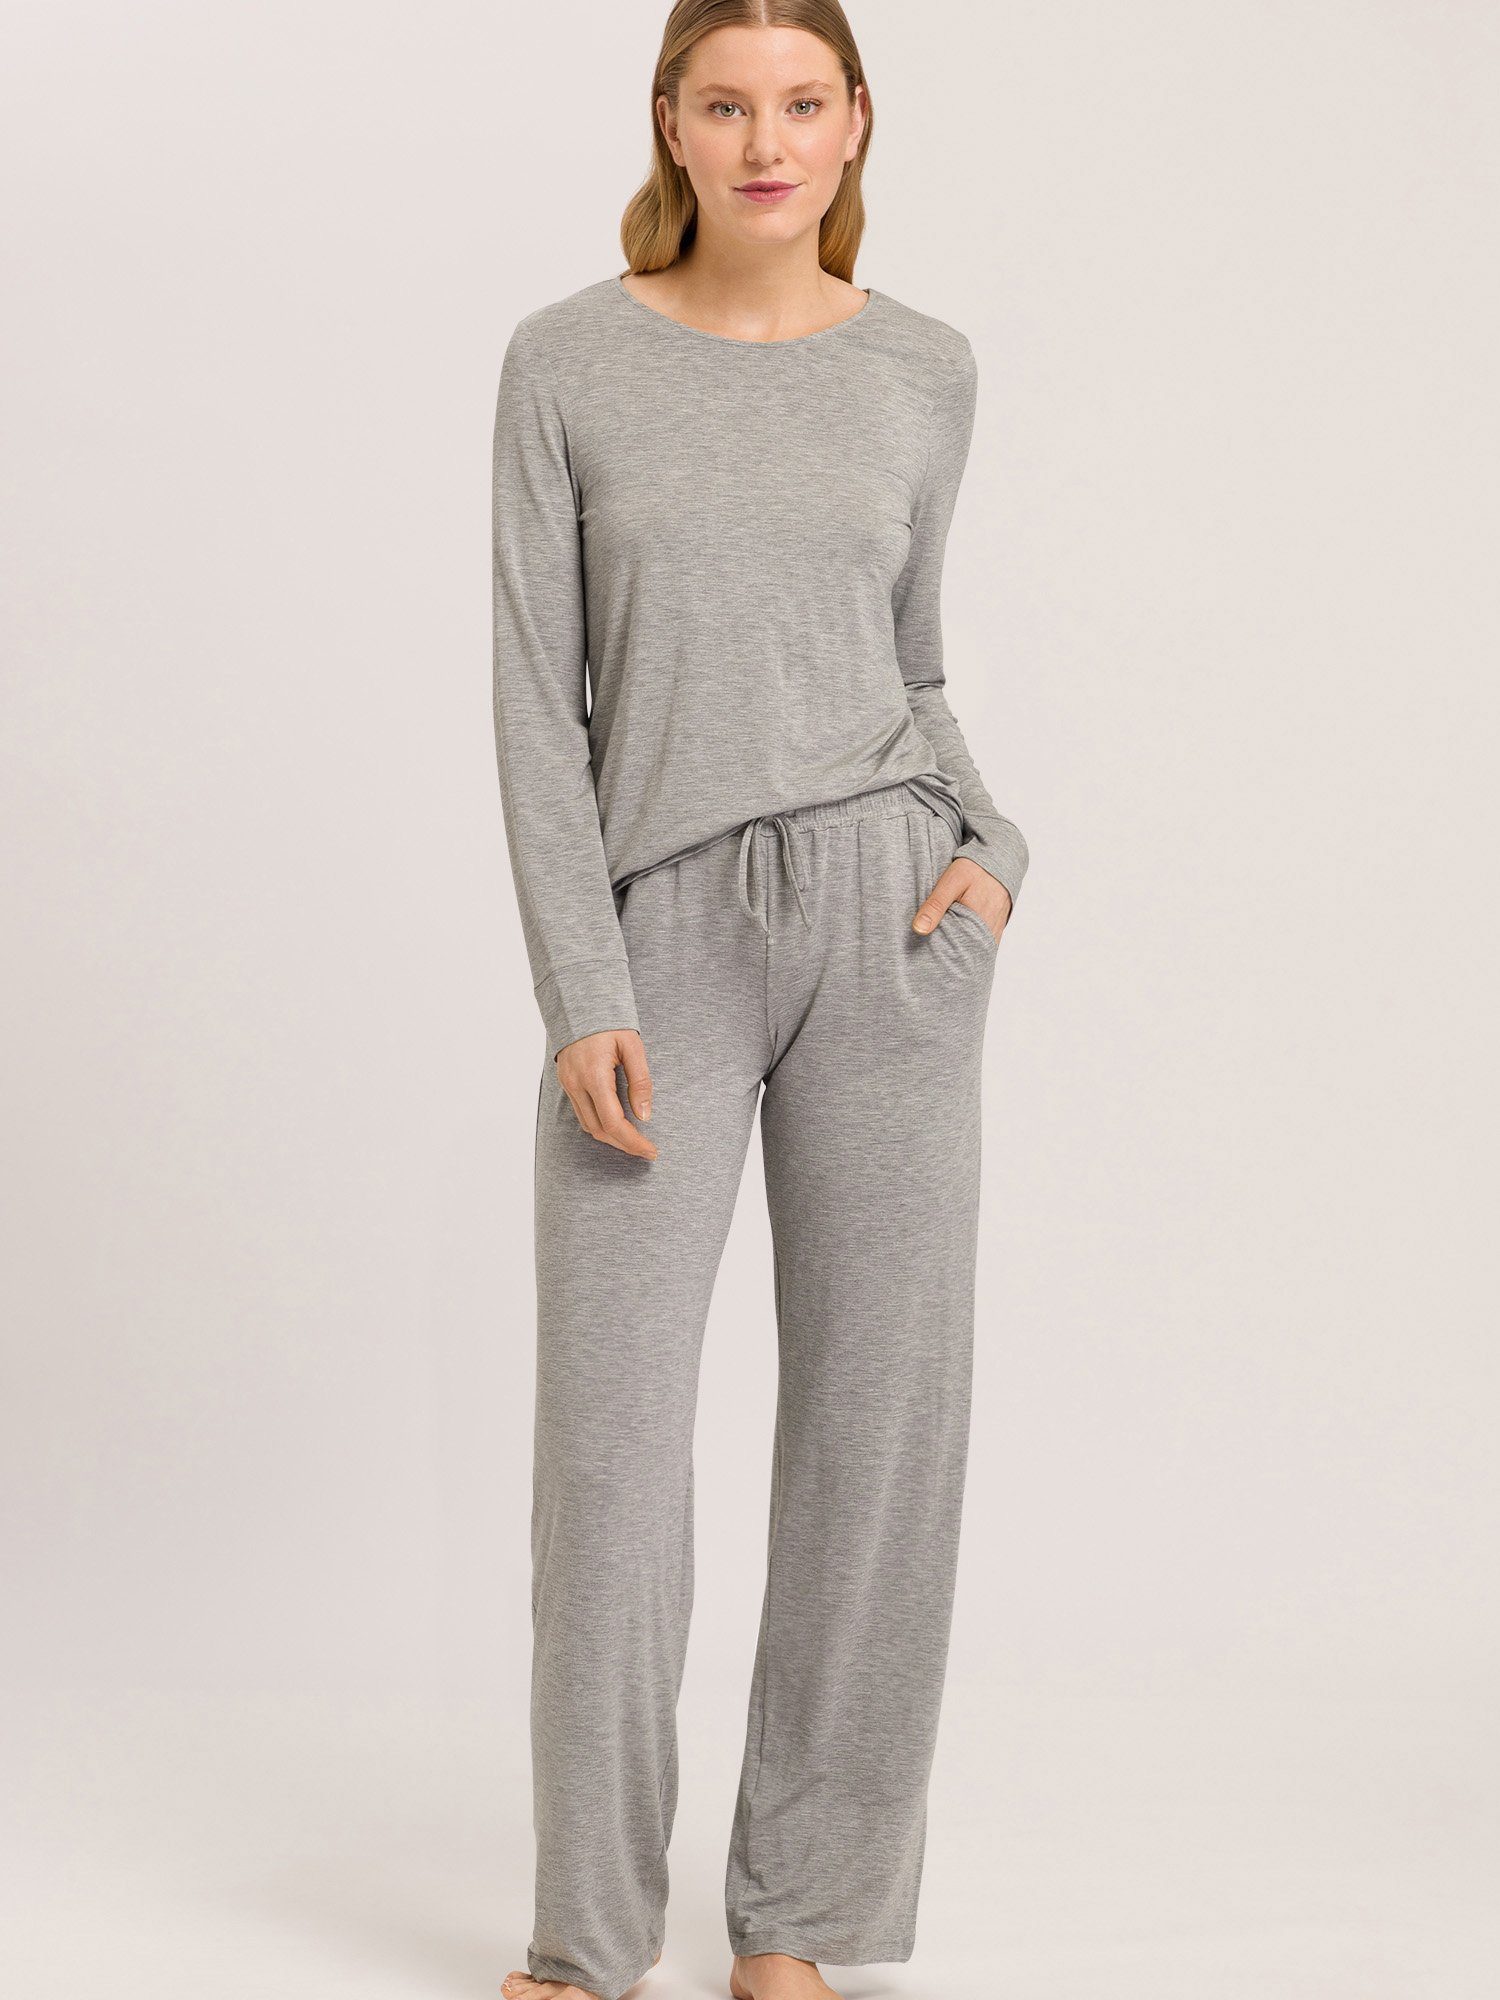 Hanro Pyjamahose Natural Elegance grey pyjama schlafmode melange schlaf-hose